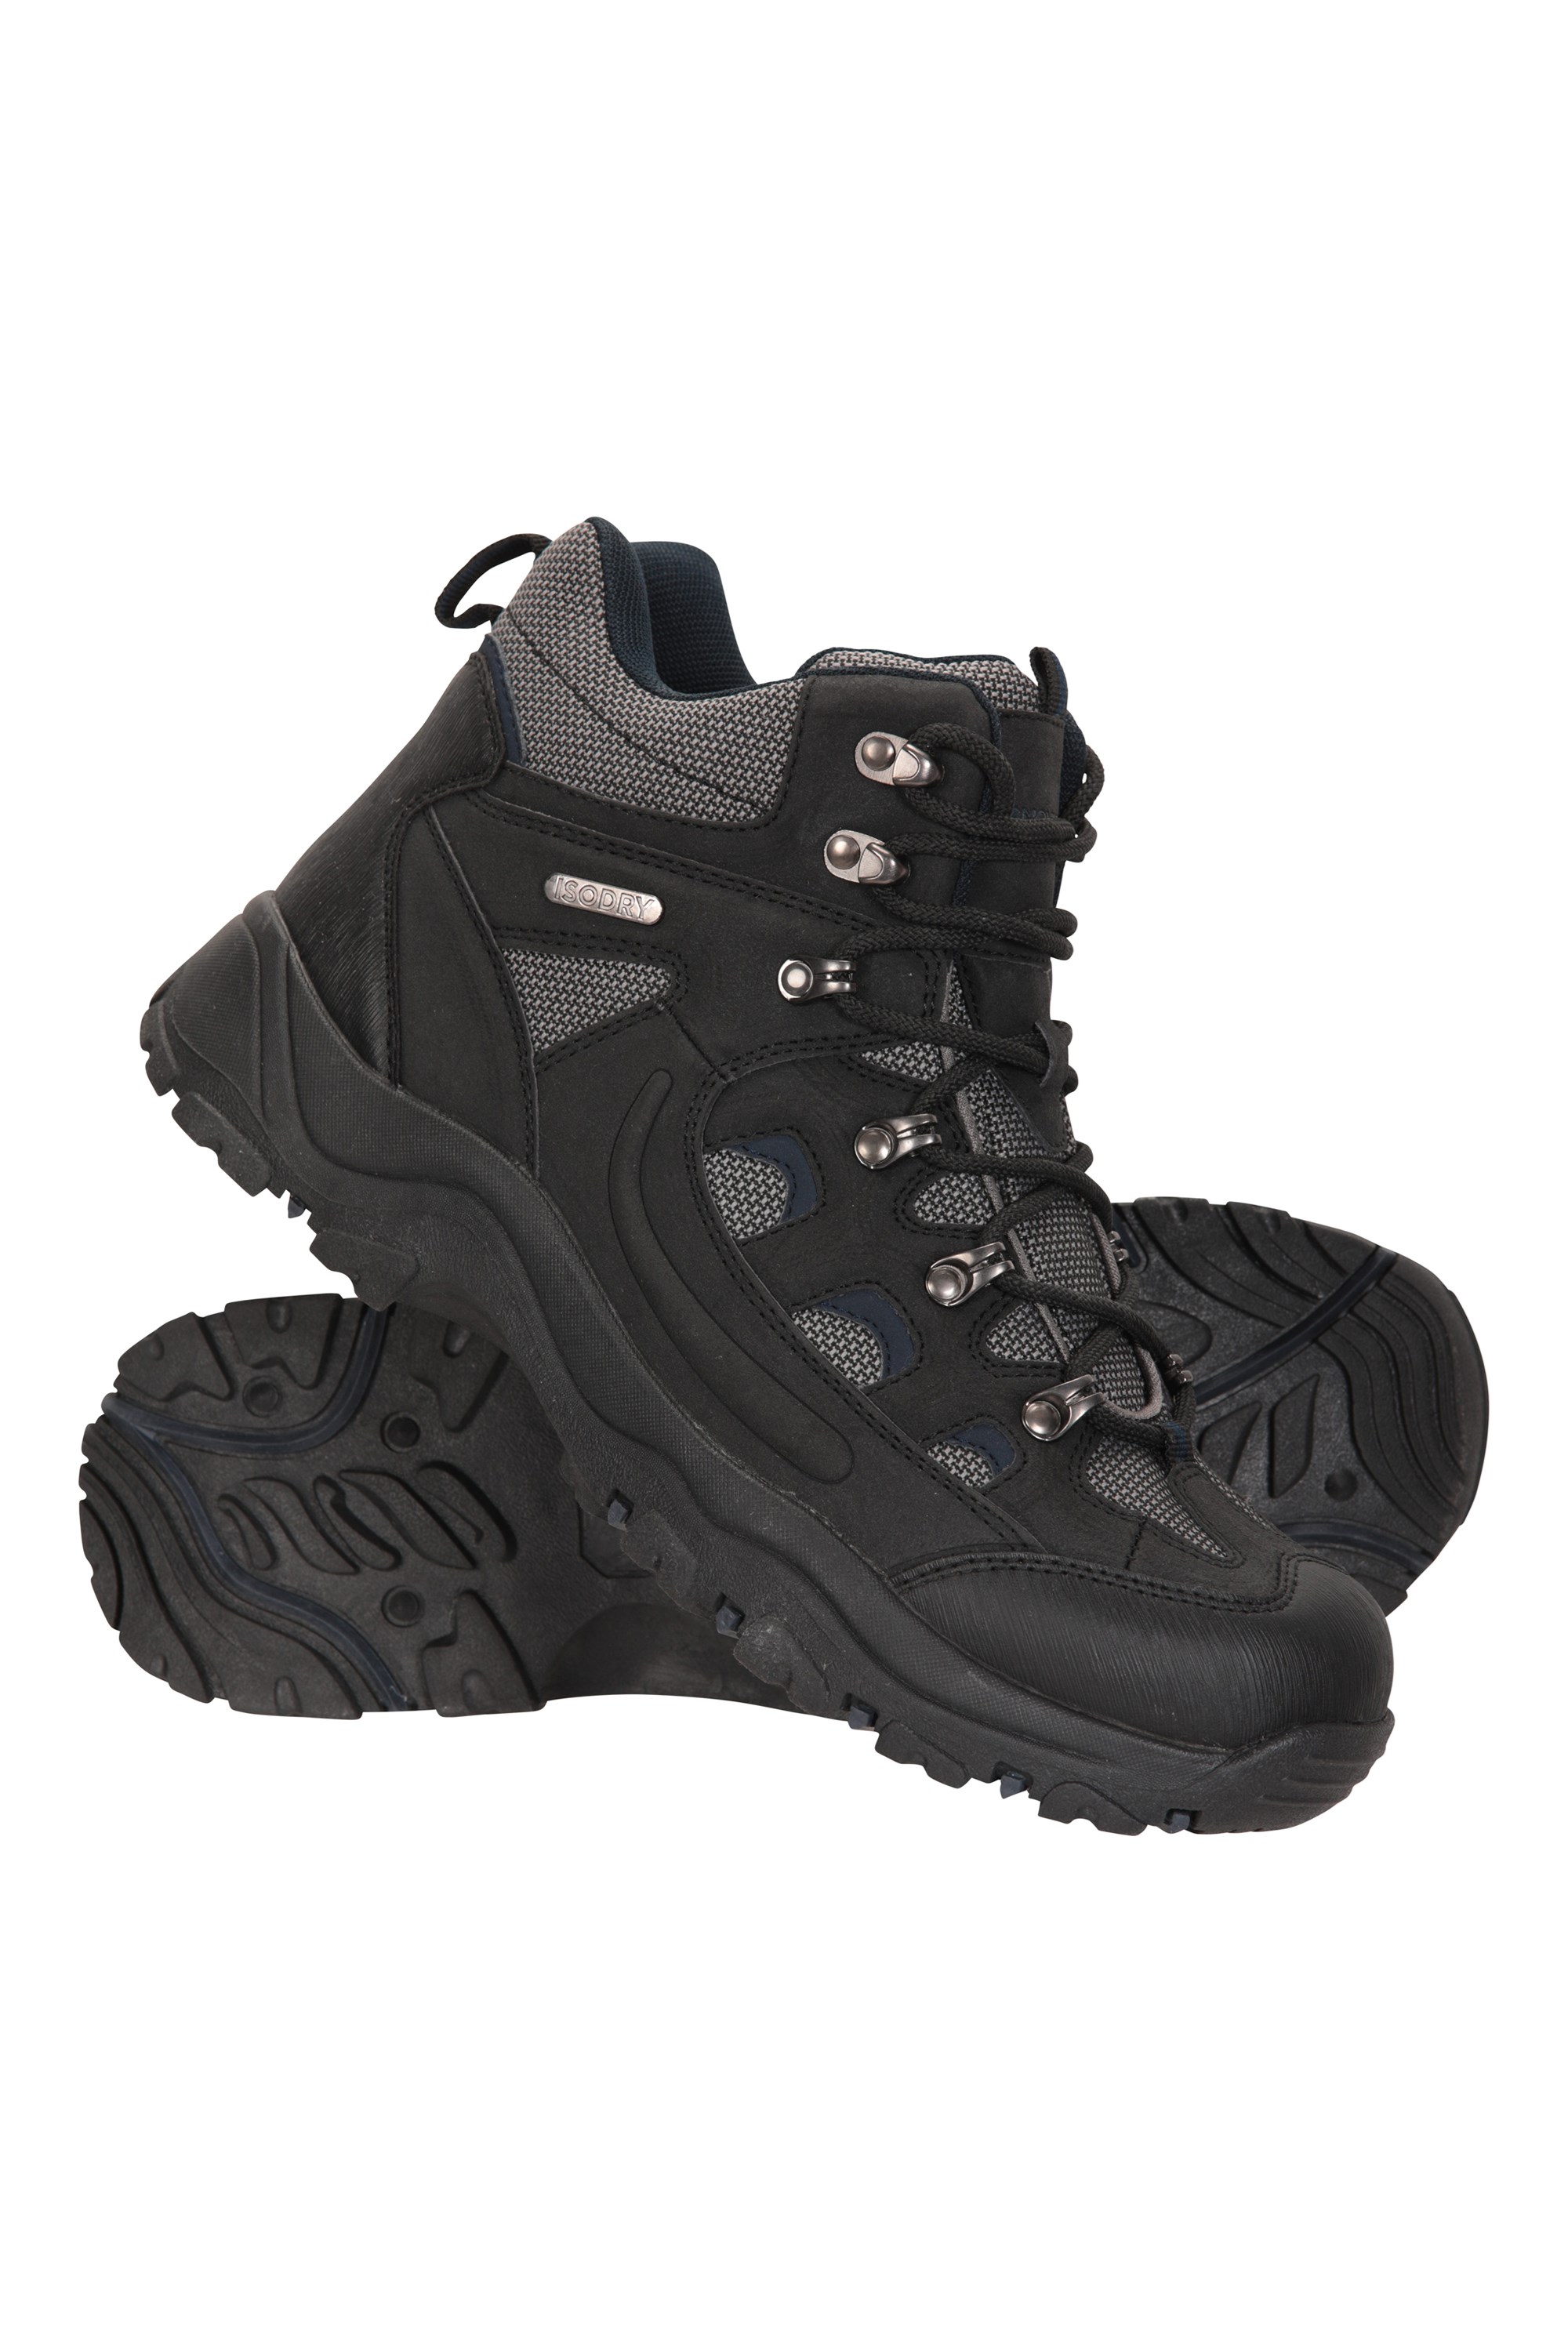 mens black waterproof boots